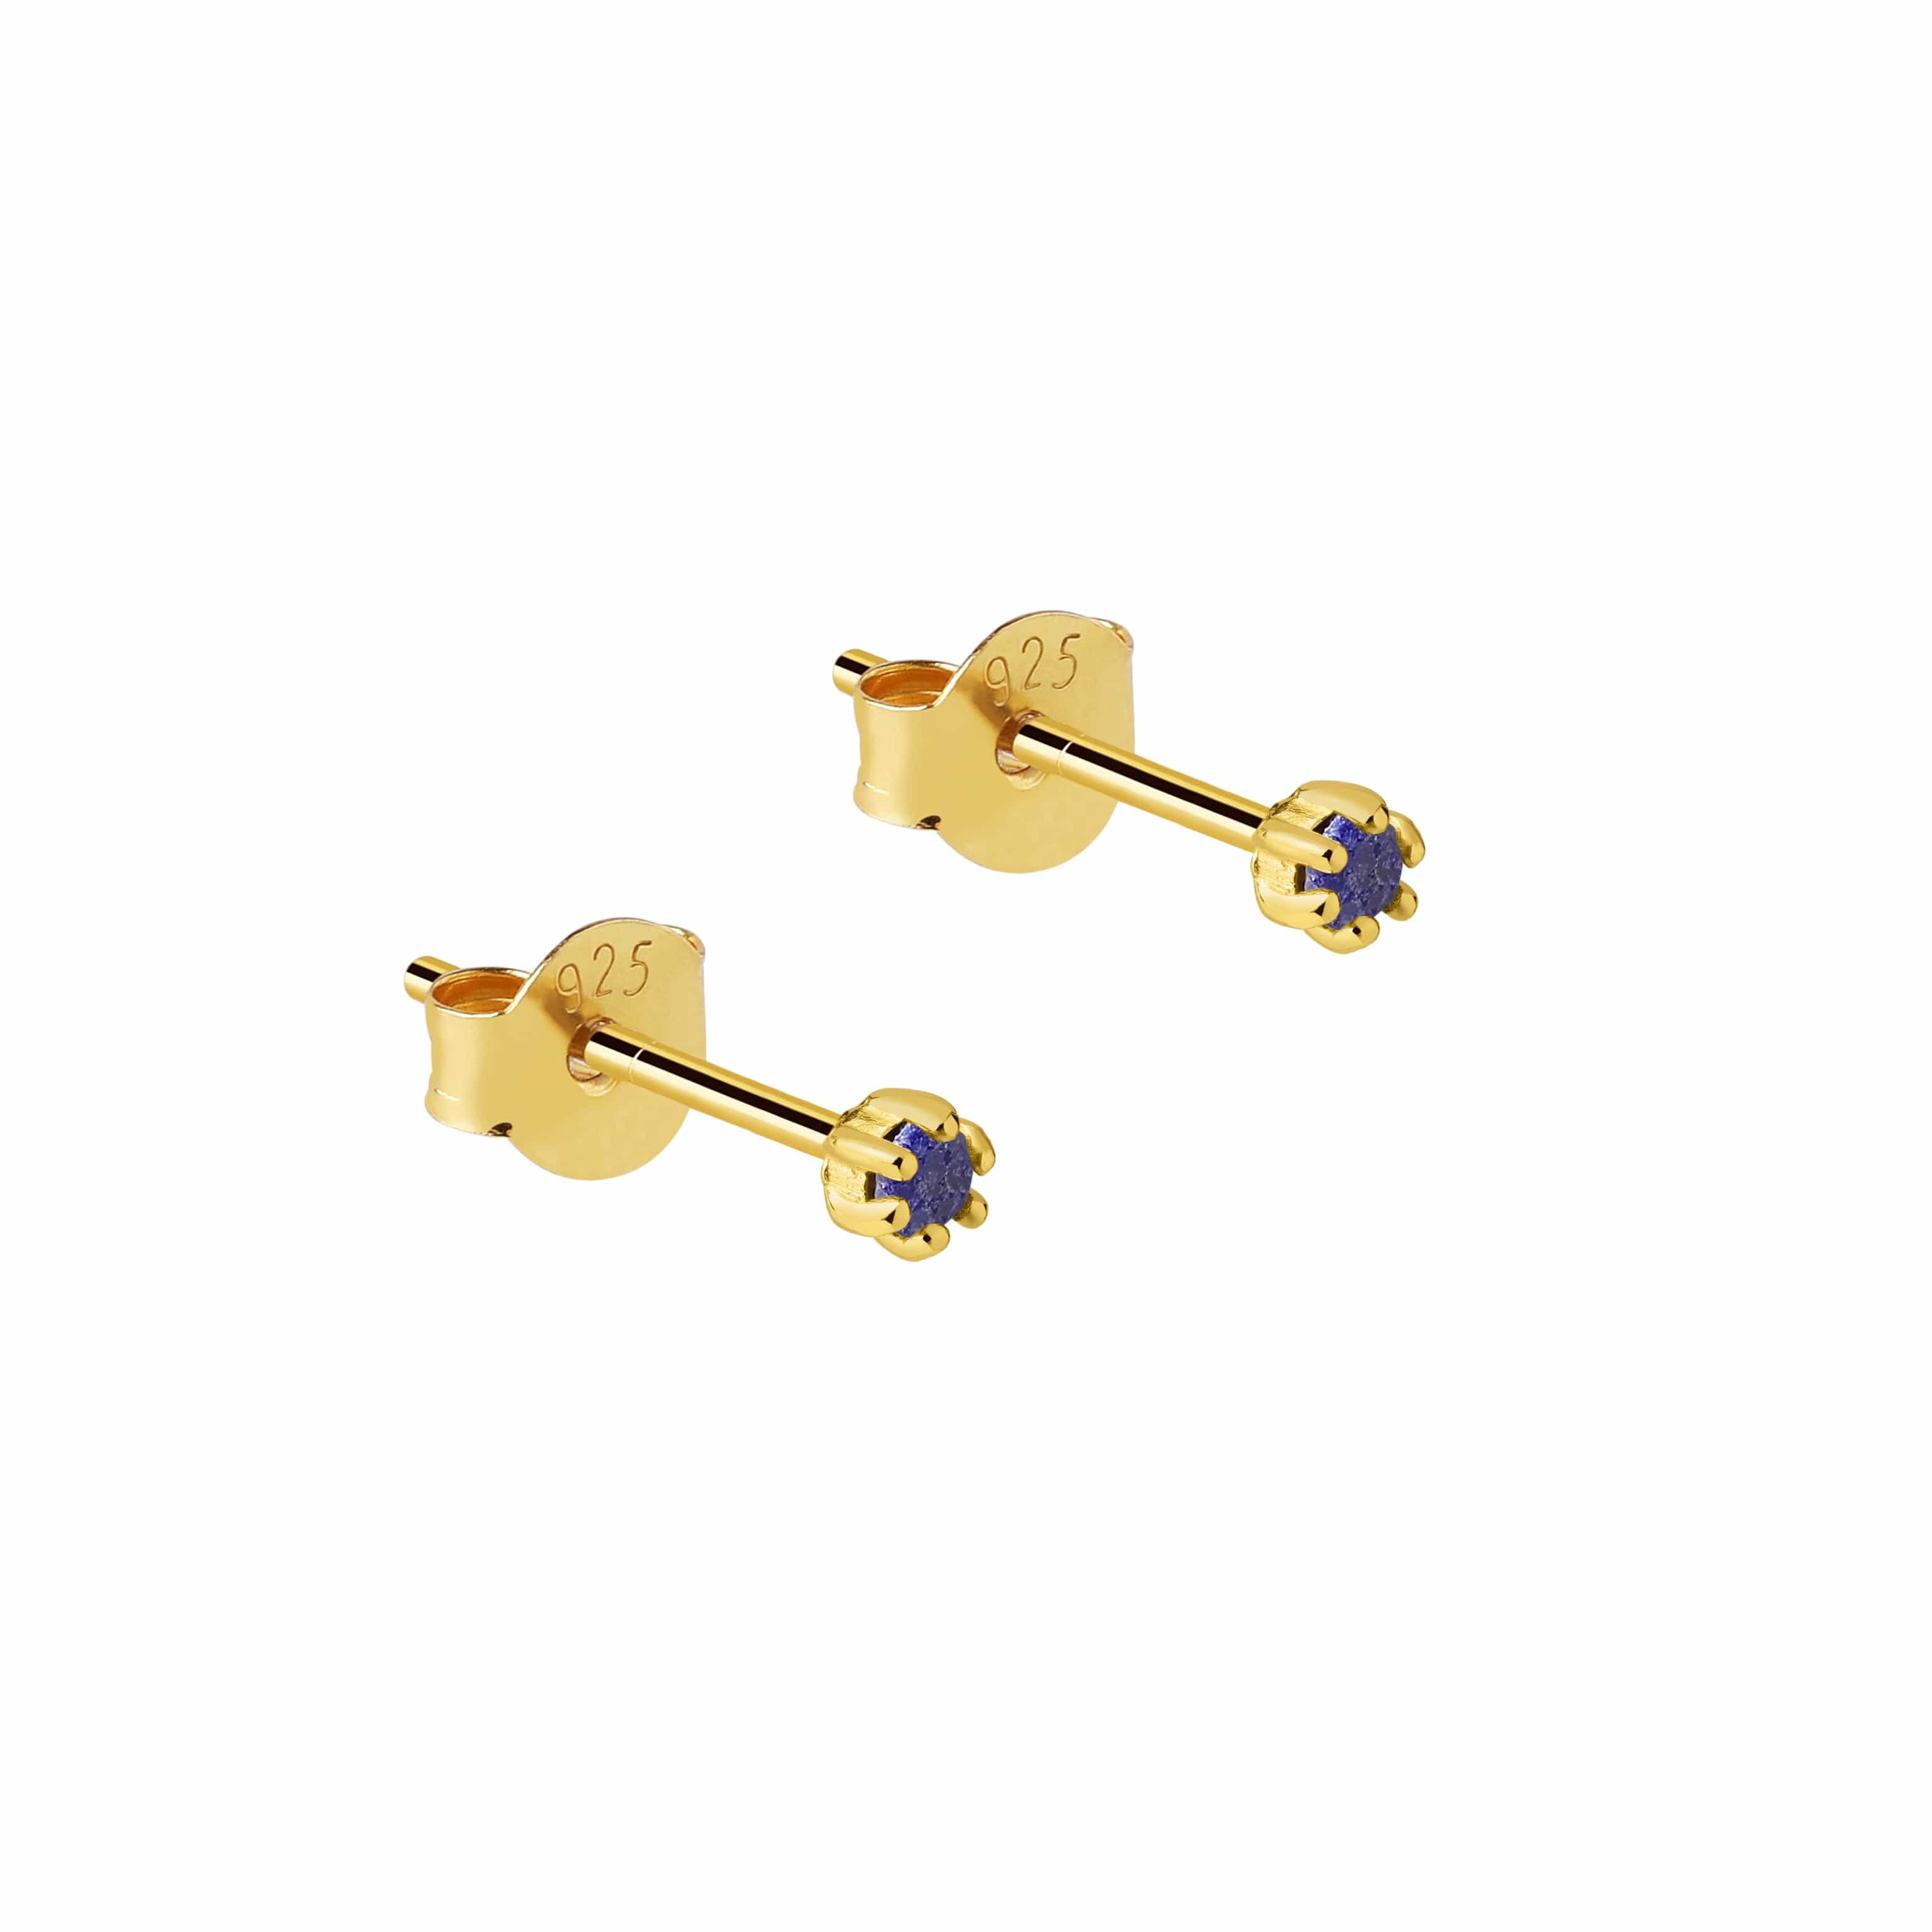 Gold plated stud earrings with Lapis Lazuli stone, Vergulde oorstekers met Lapis Lazuli steen